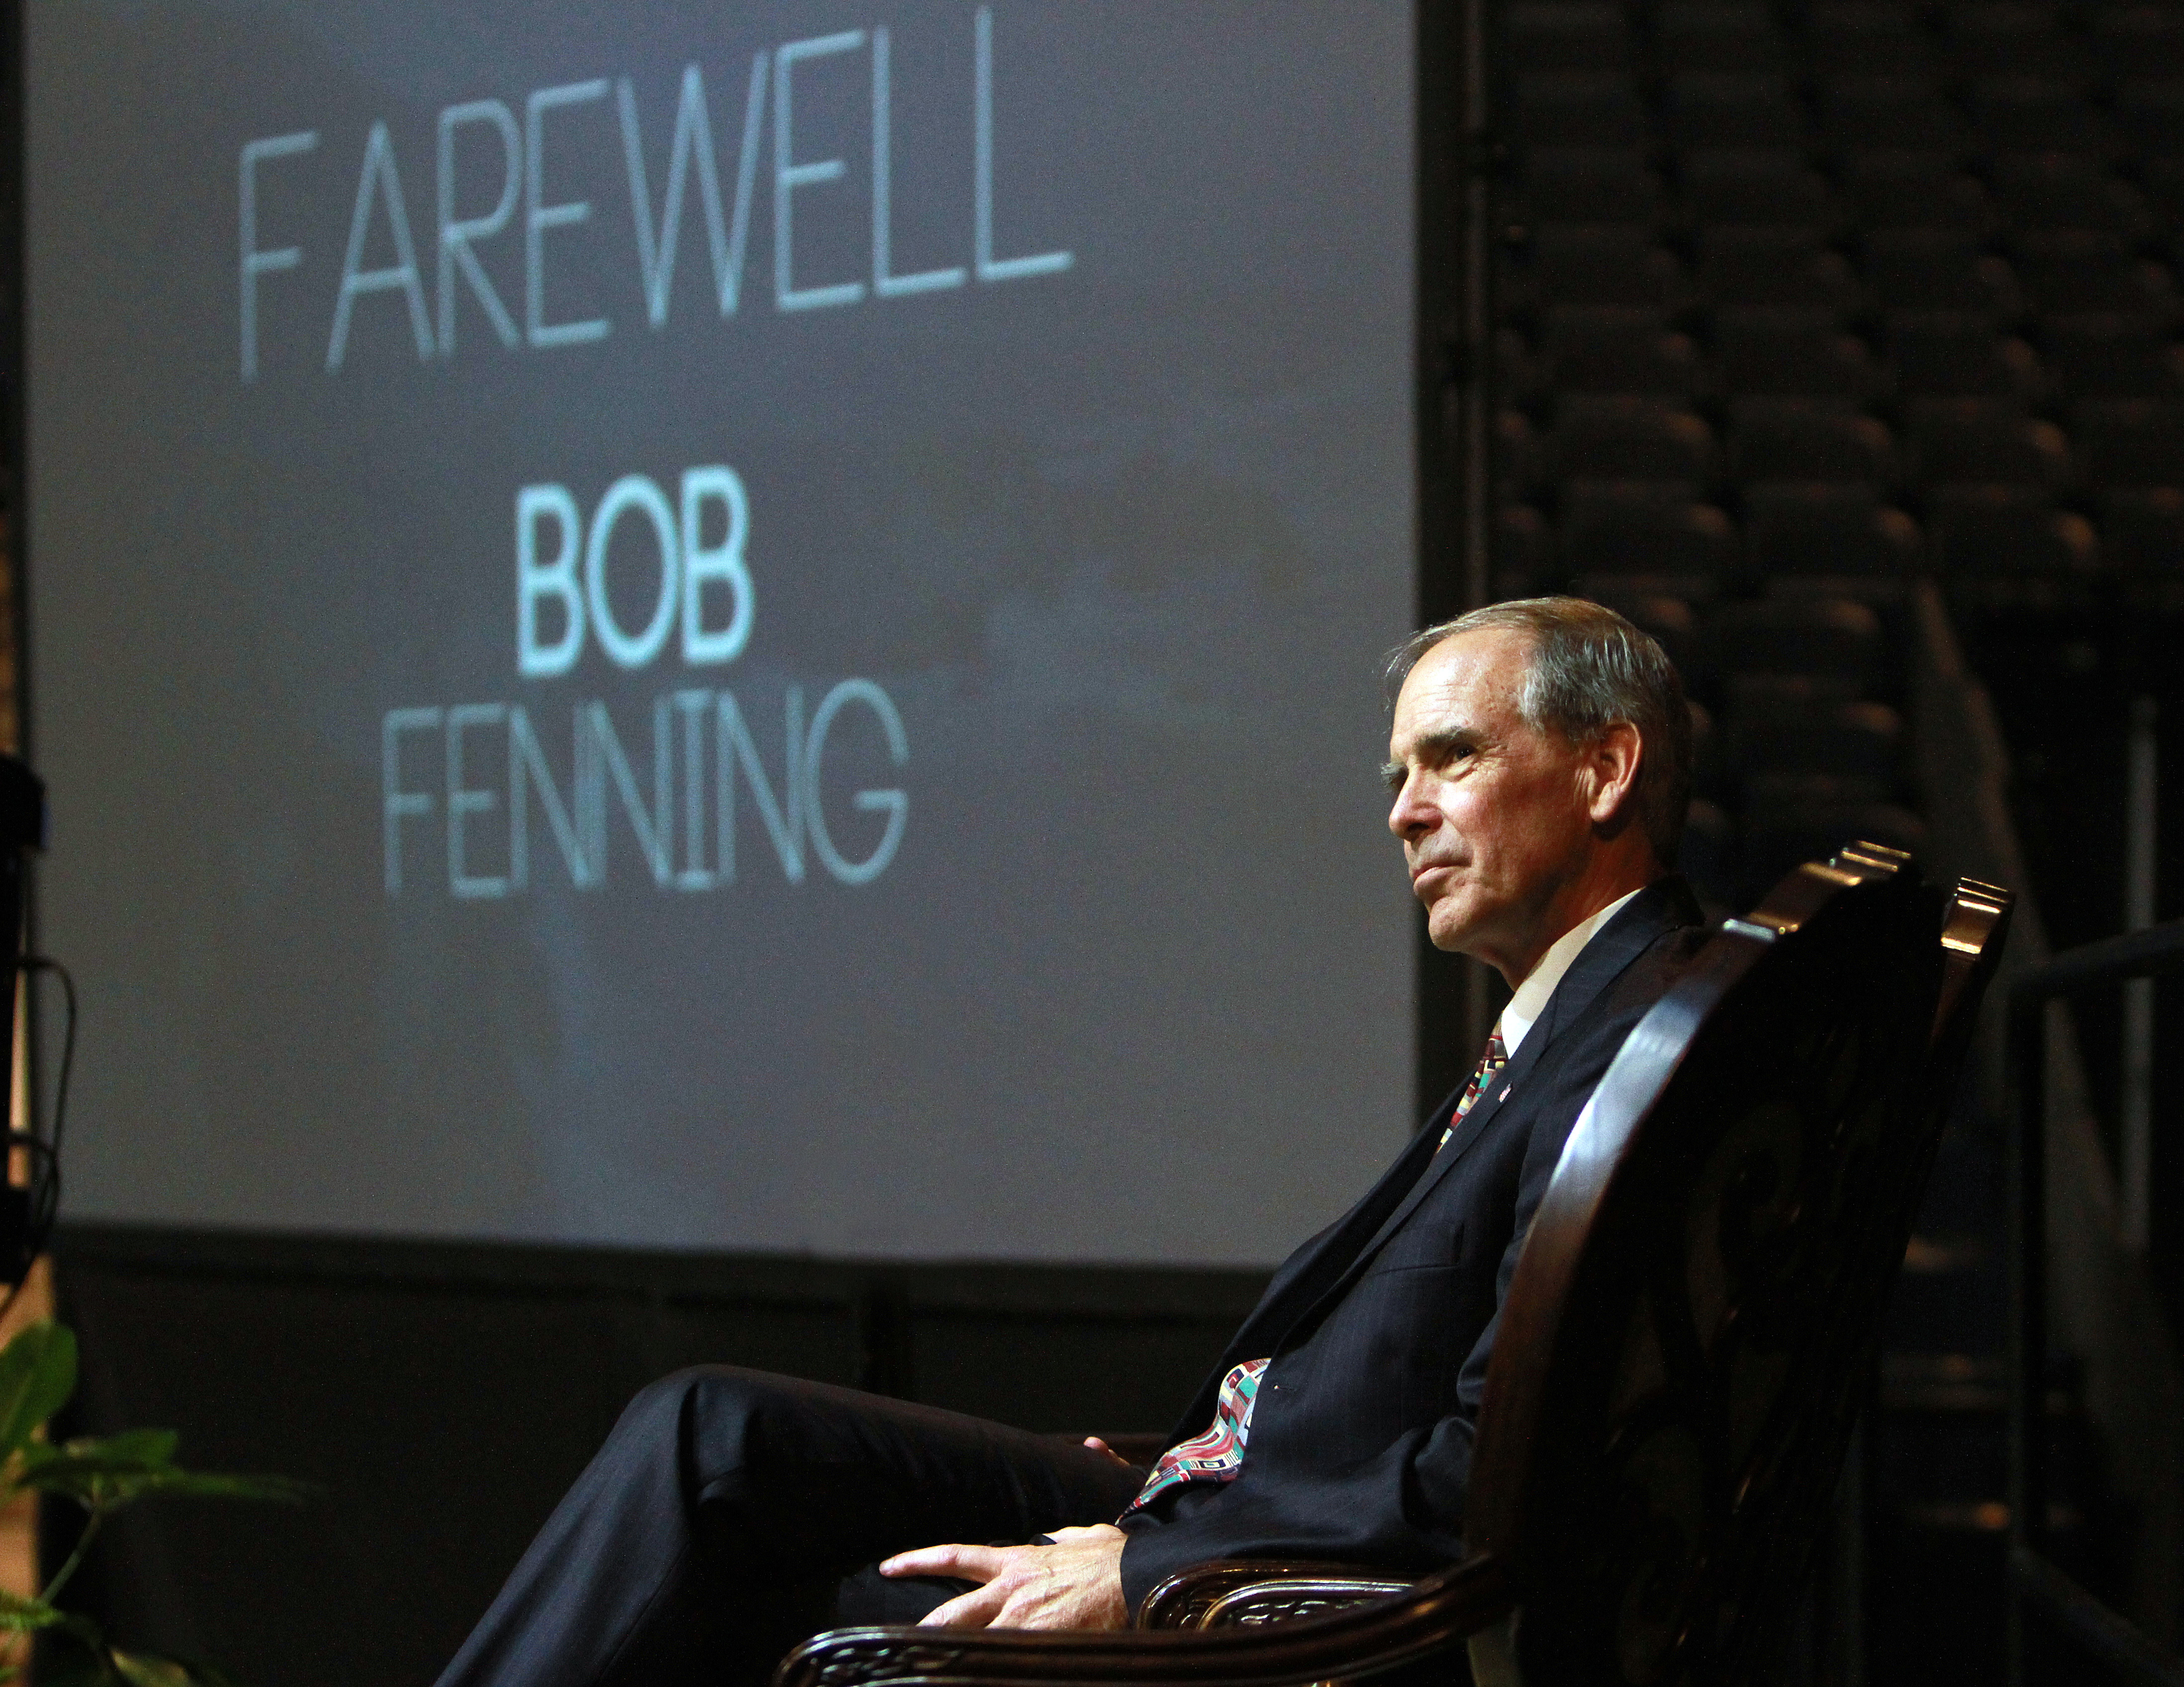 Bob Fenning Farewell